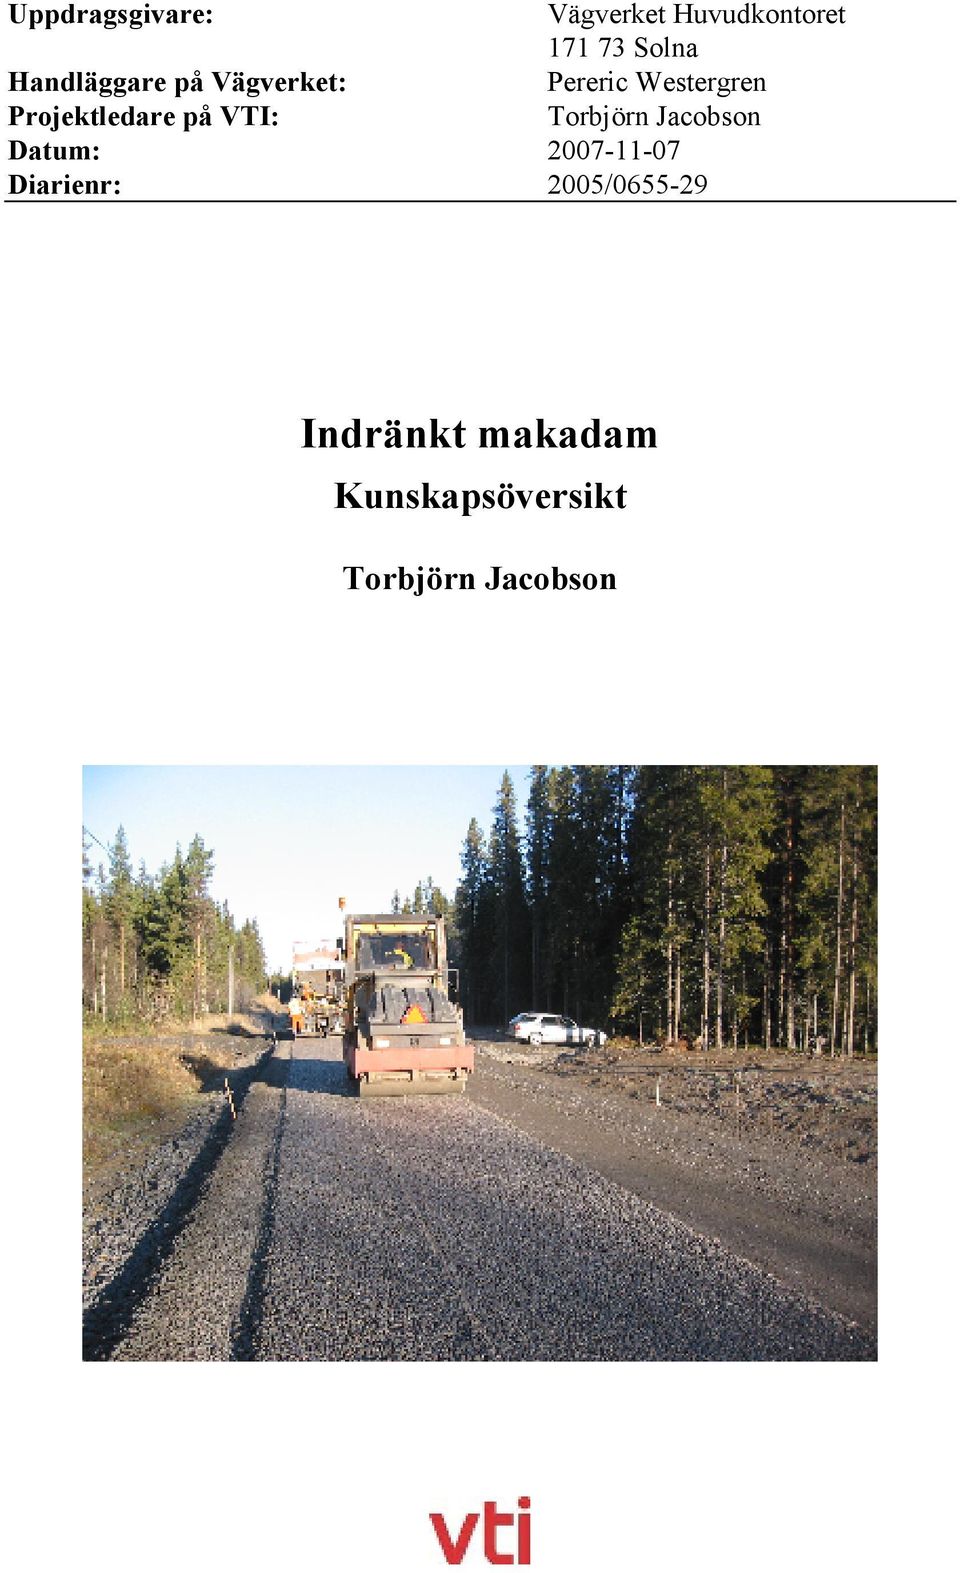 Projektledare på VTI: Torbjörn Jacobson Datum: 2007-11-07